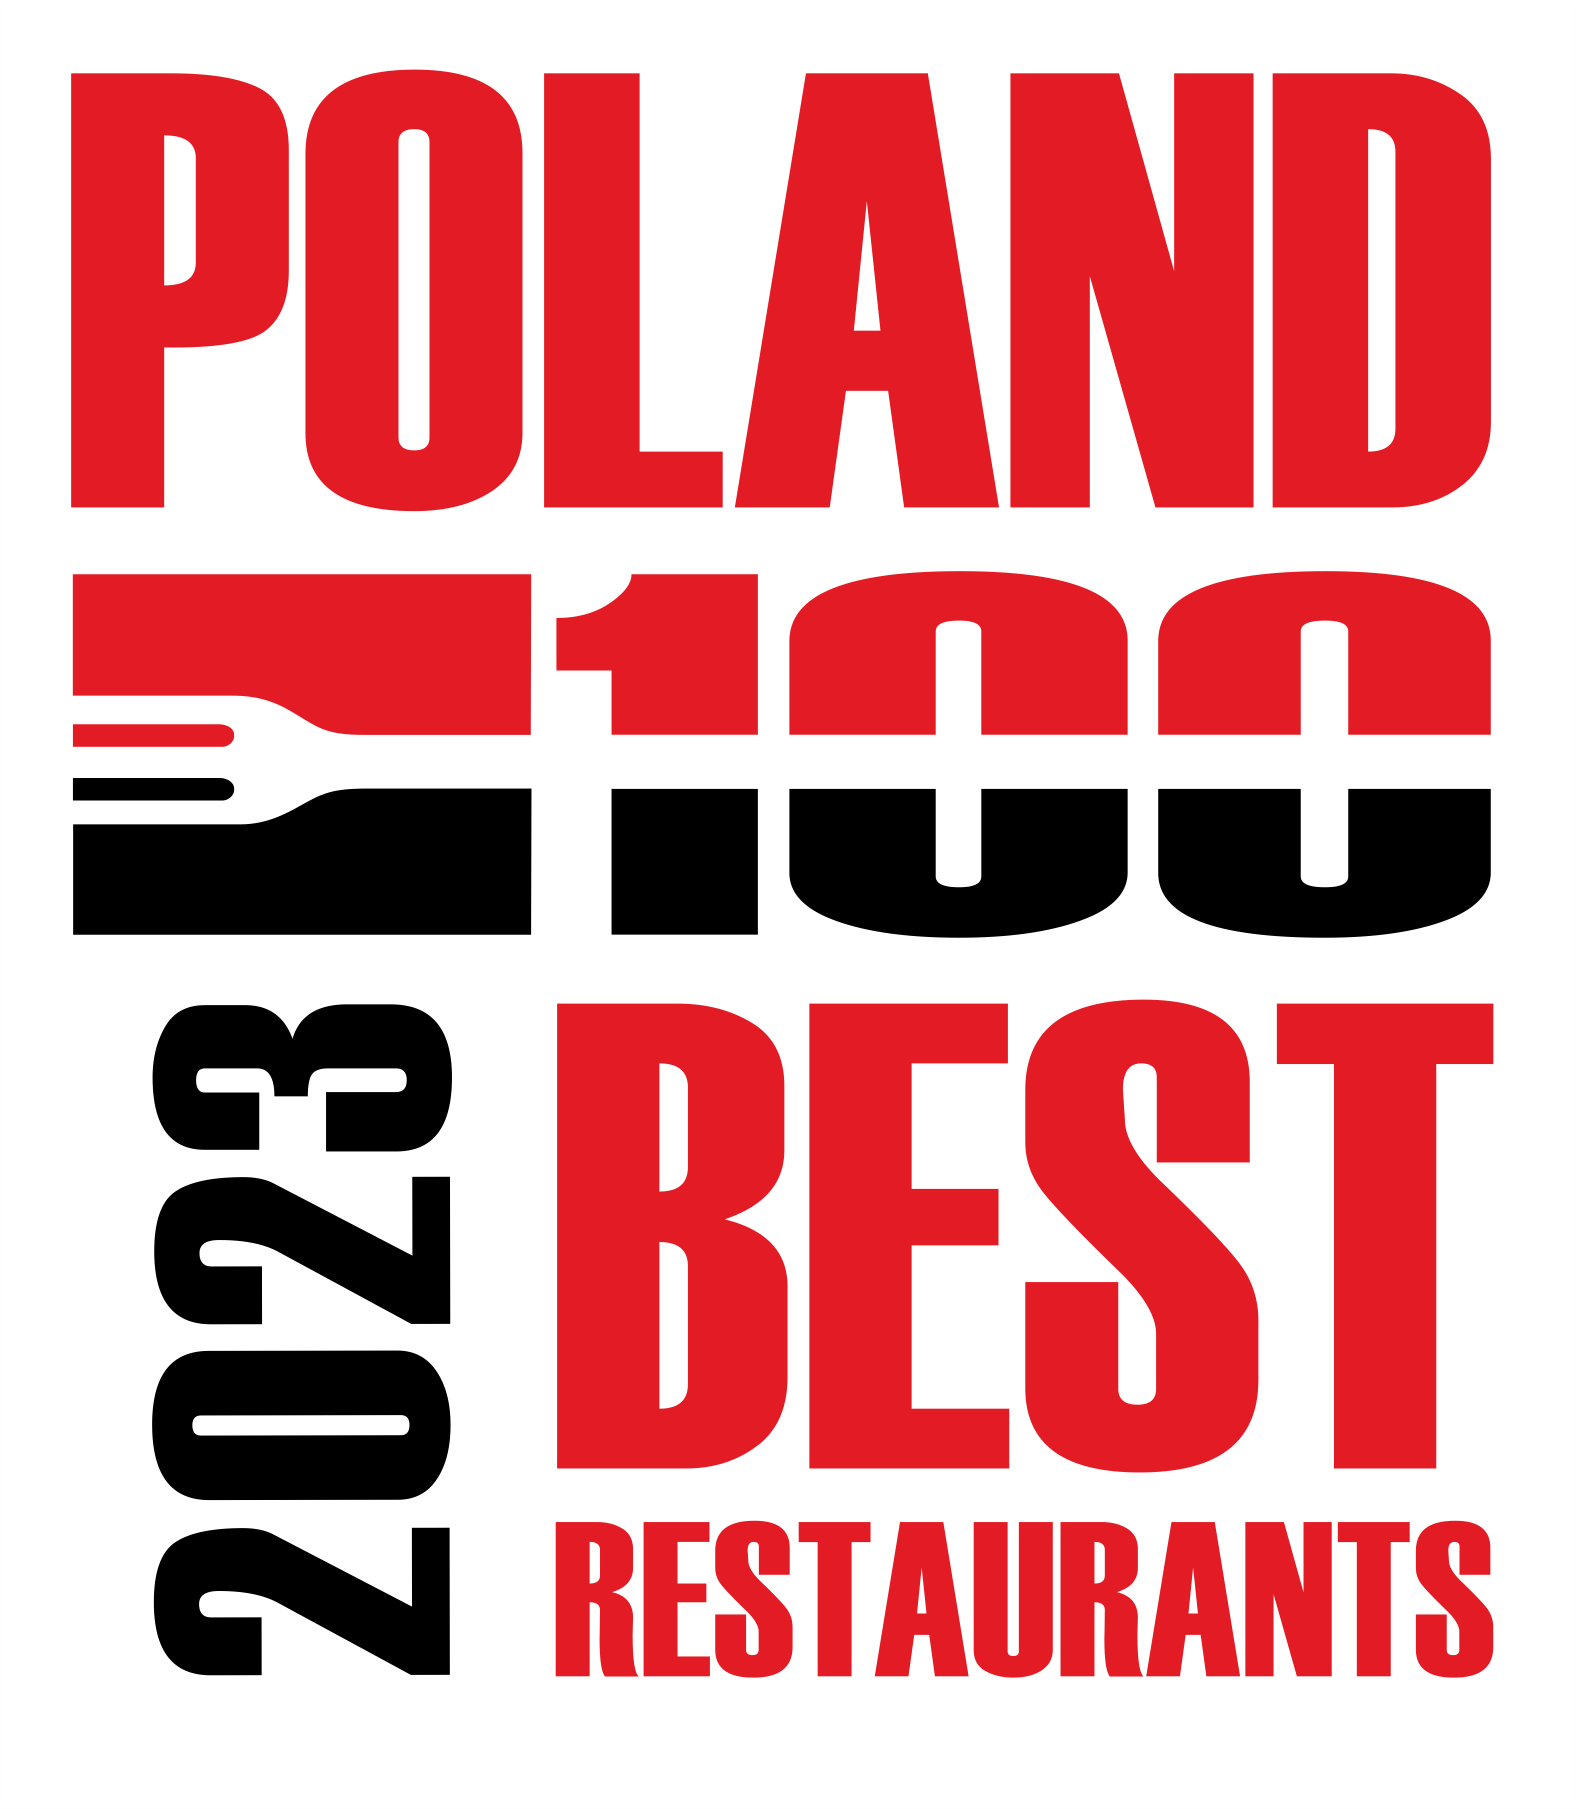 Poland best restaurants